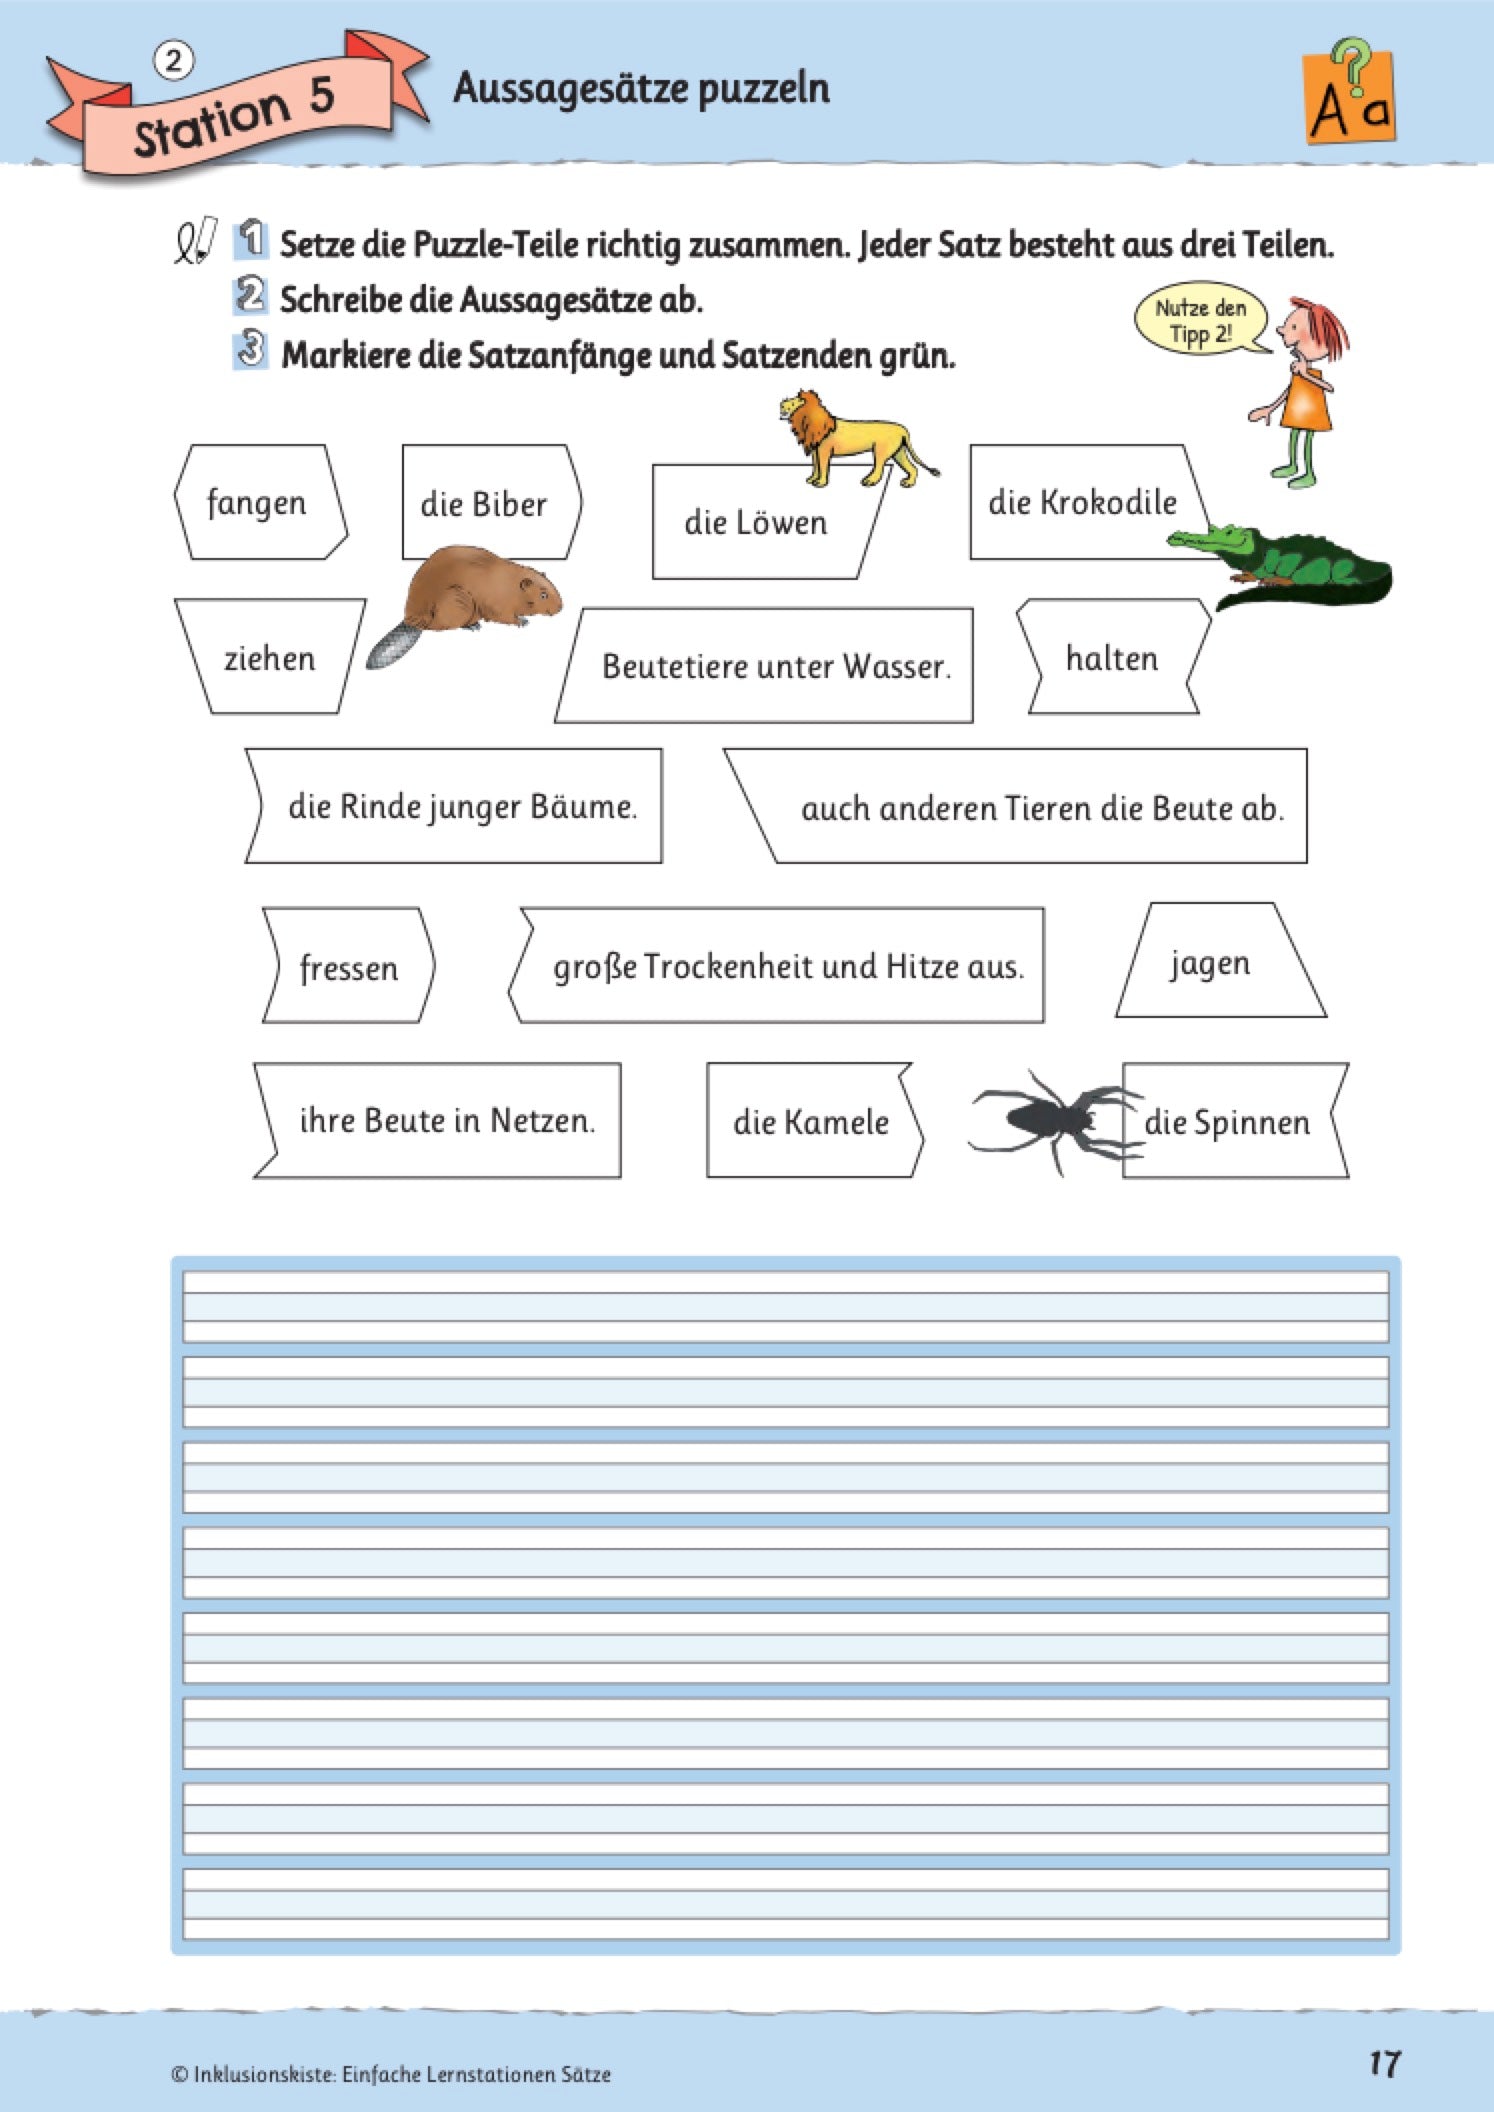 Materialpaket: Einfache Lernstationen: Silben, Nomen, Verben und Sätze / E-BOOKS